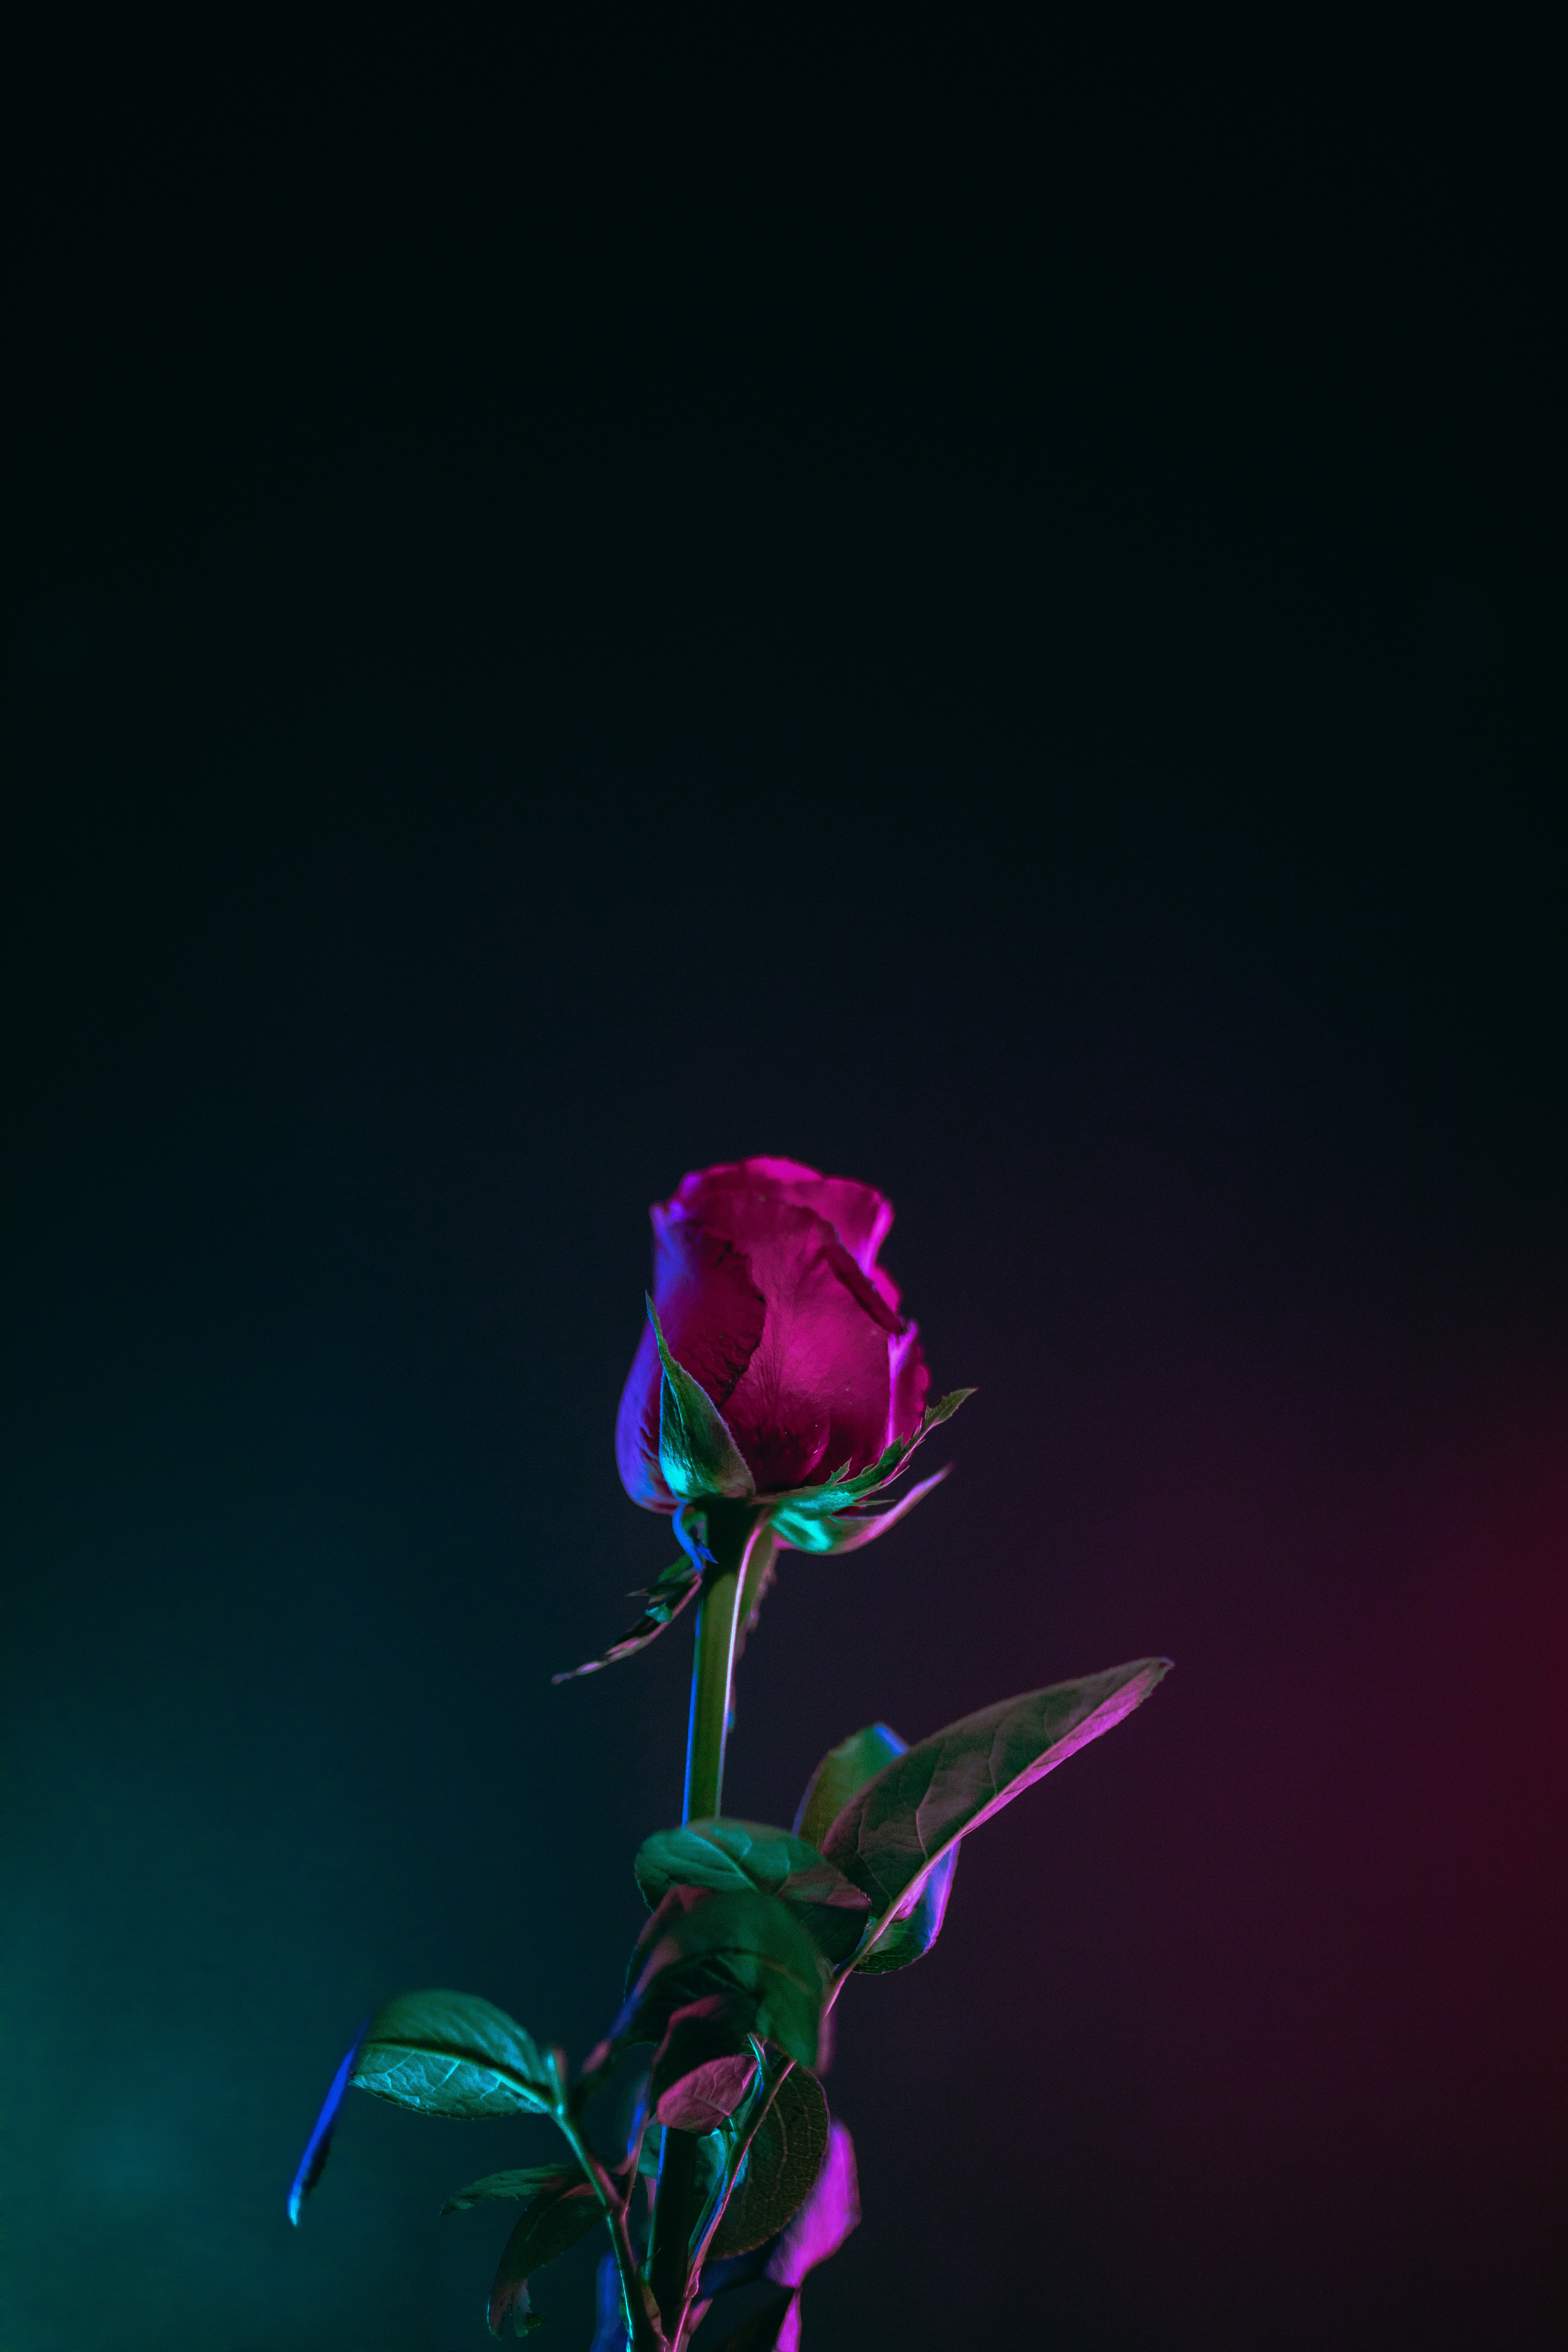  Rose Flower HQ Background Images